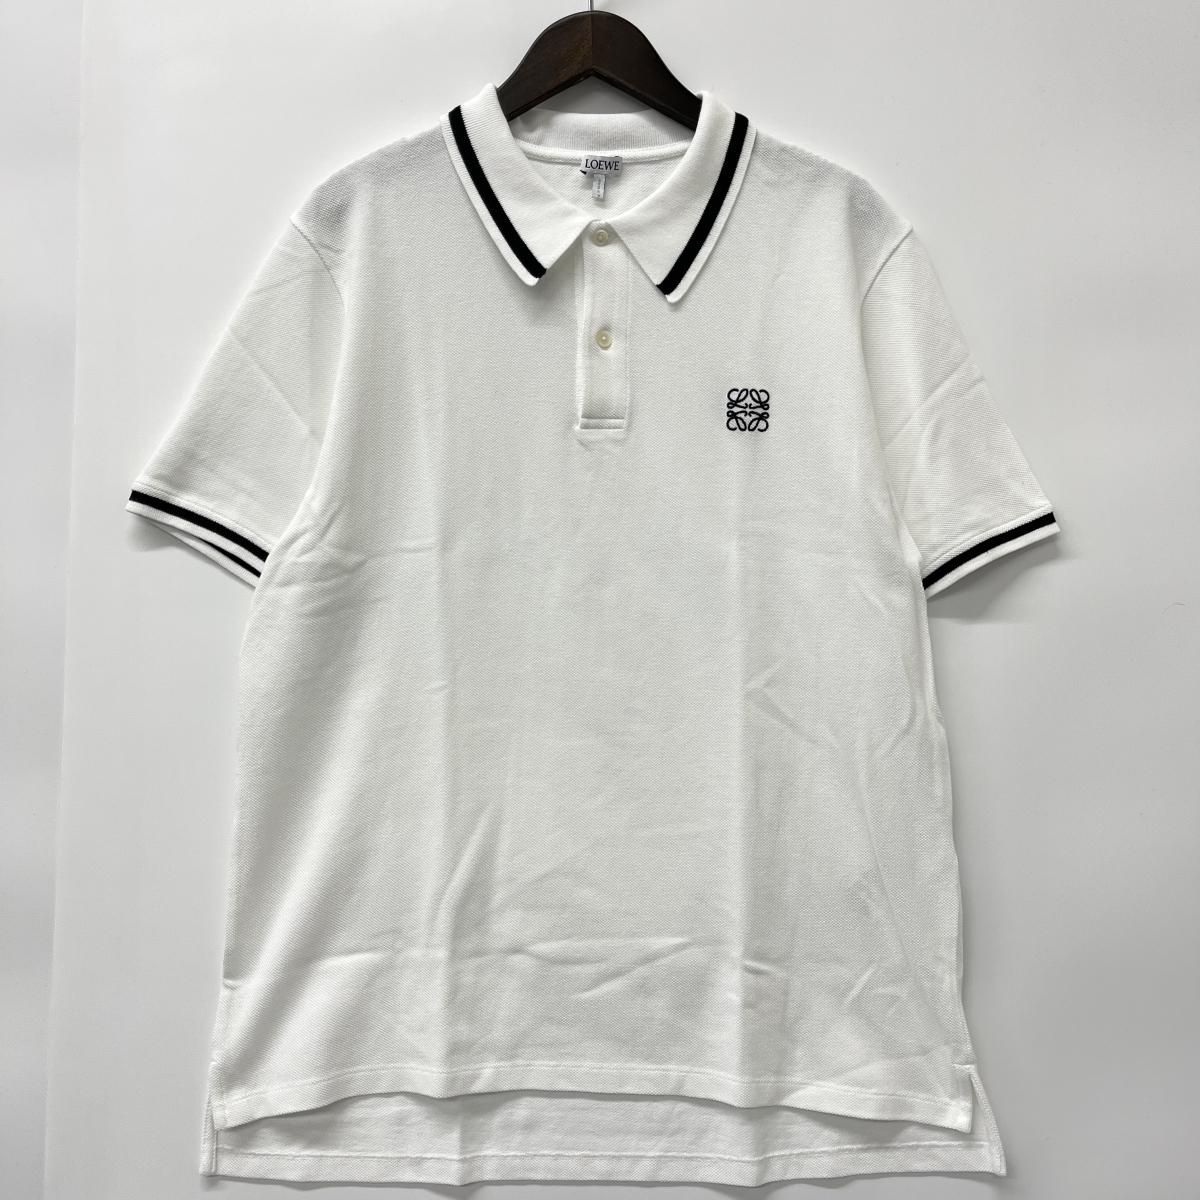 ロエベのH526Y26J04 アナグラム 刺繍 ポロシャツ ホワイトの買取実績です。